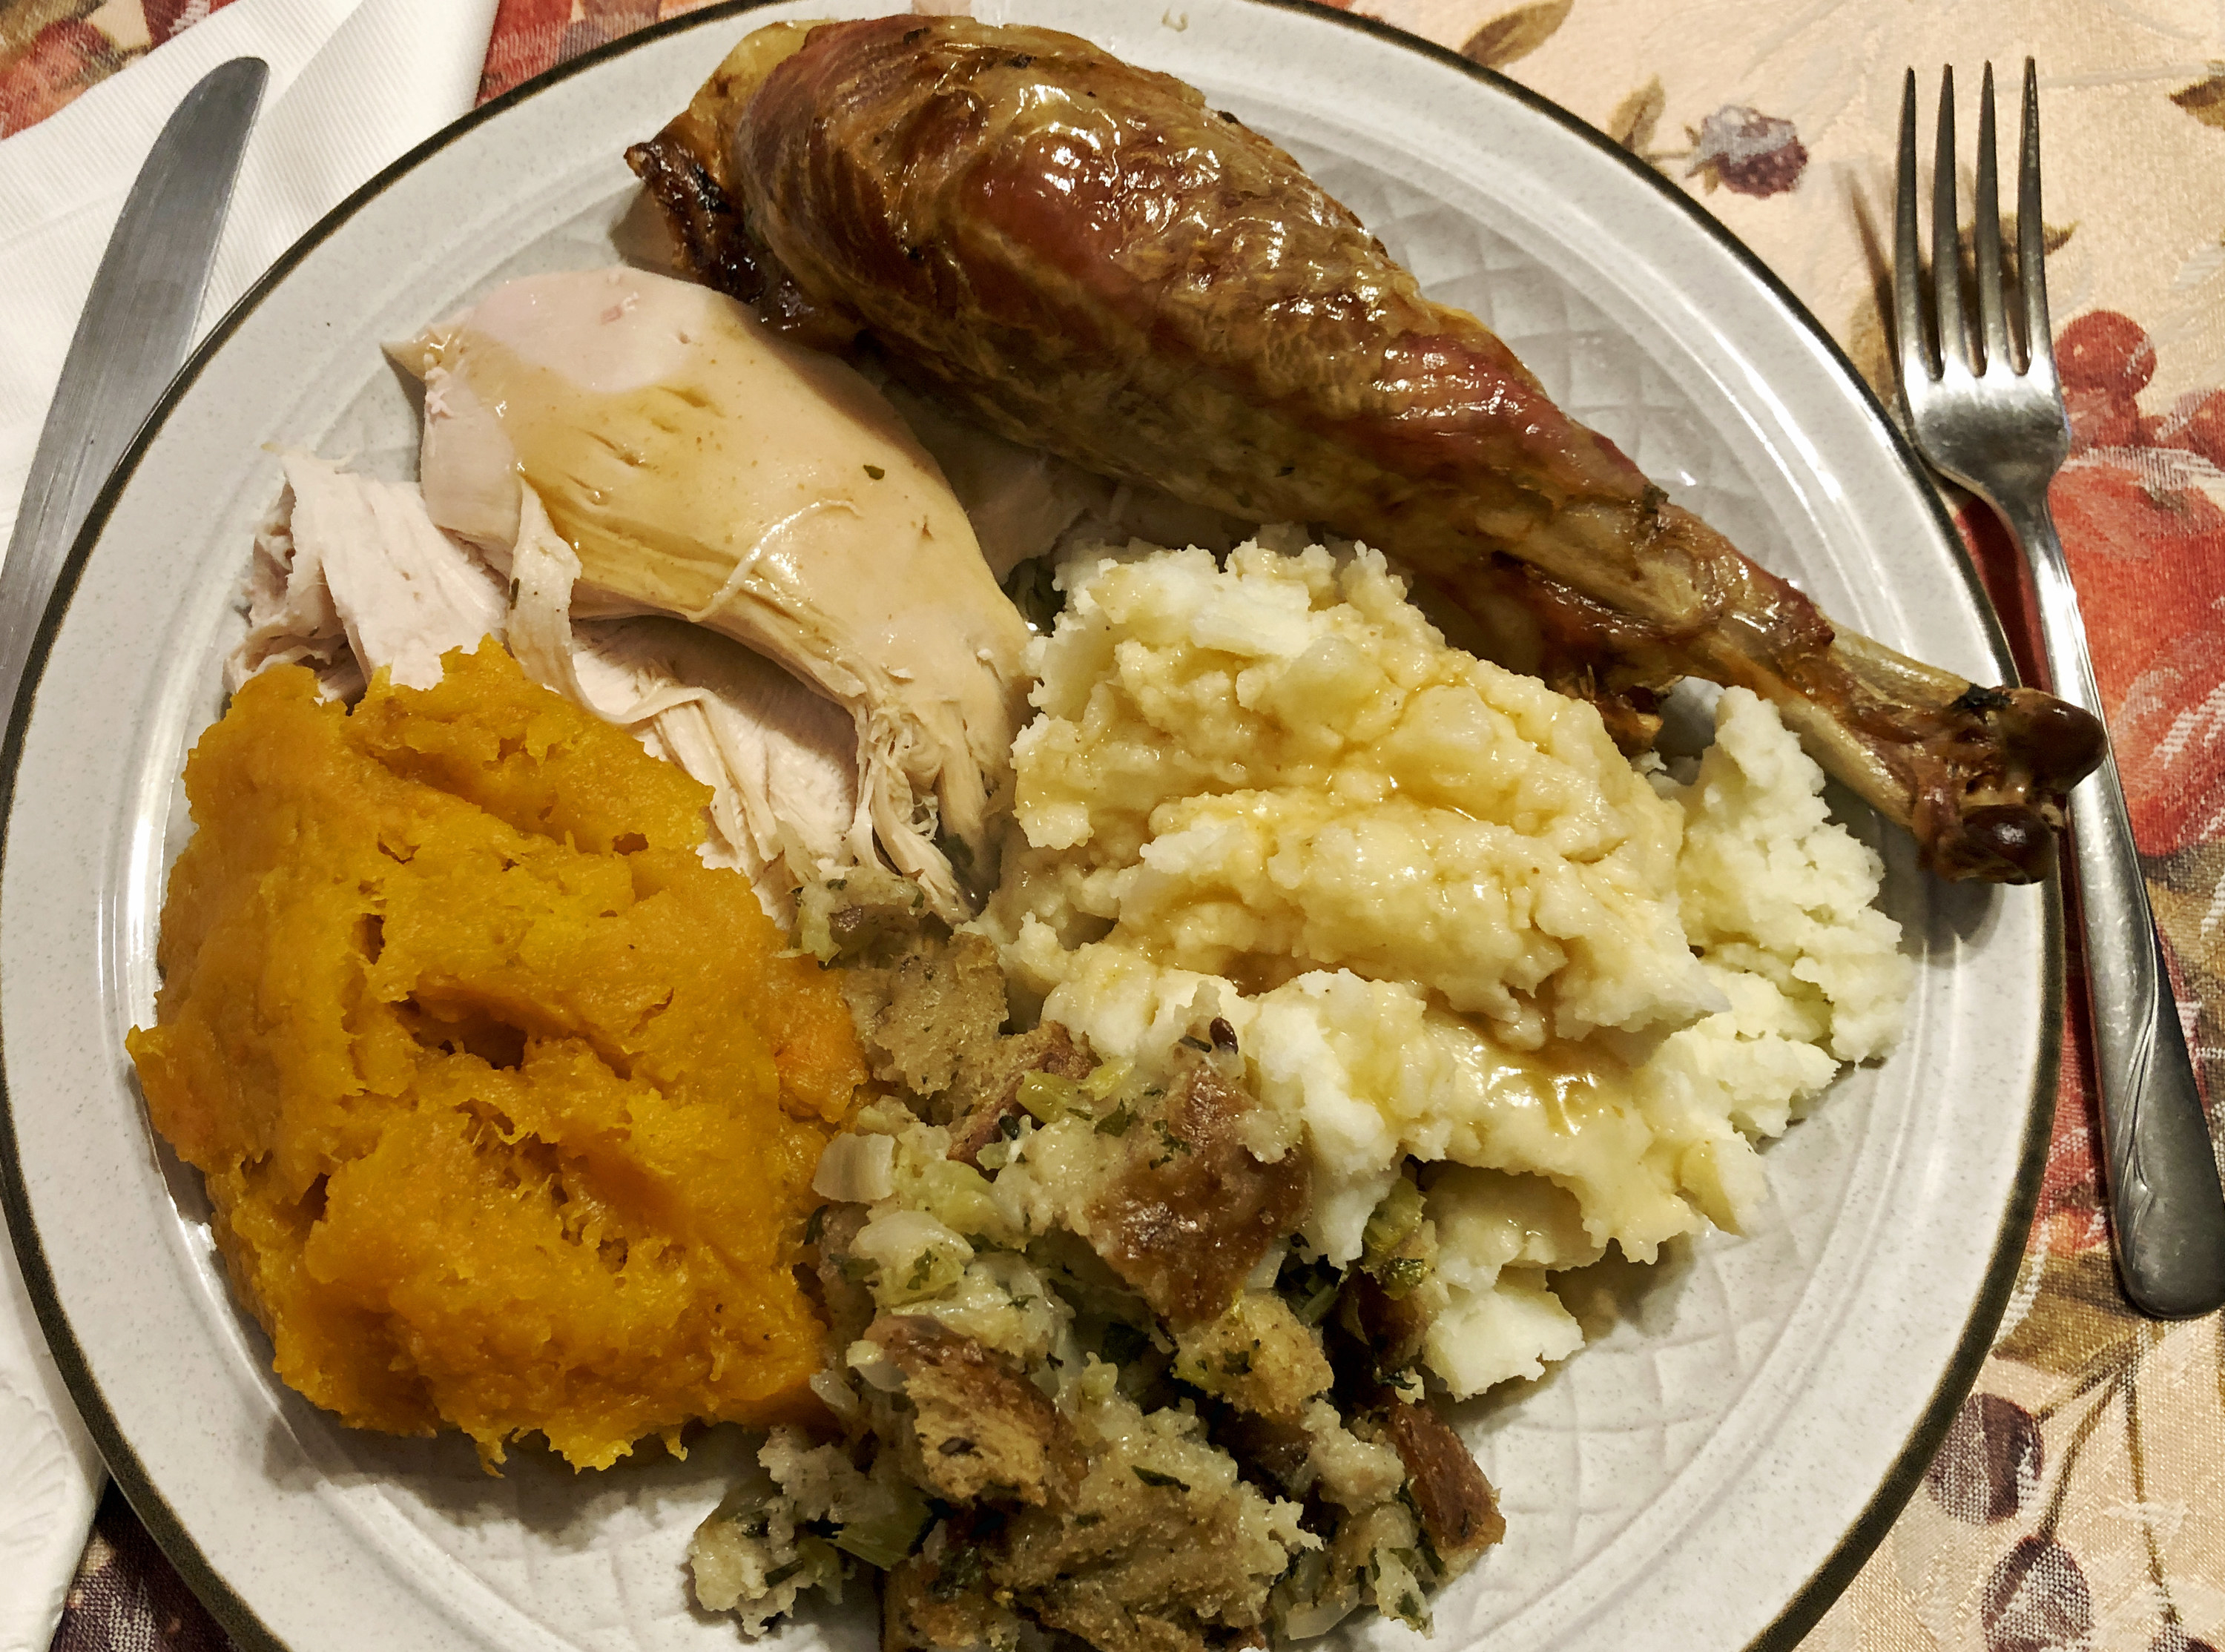 Thanksgiving dinner plate